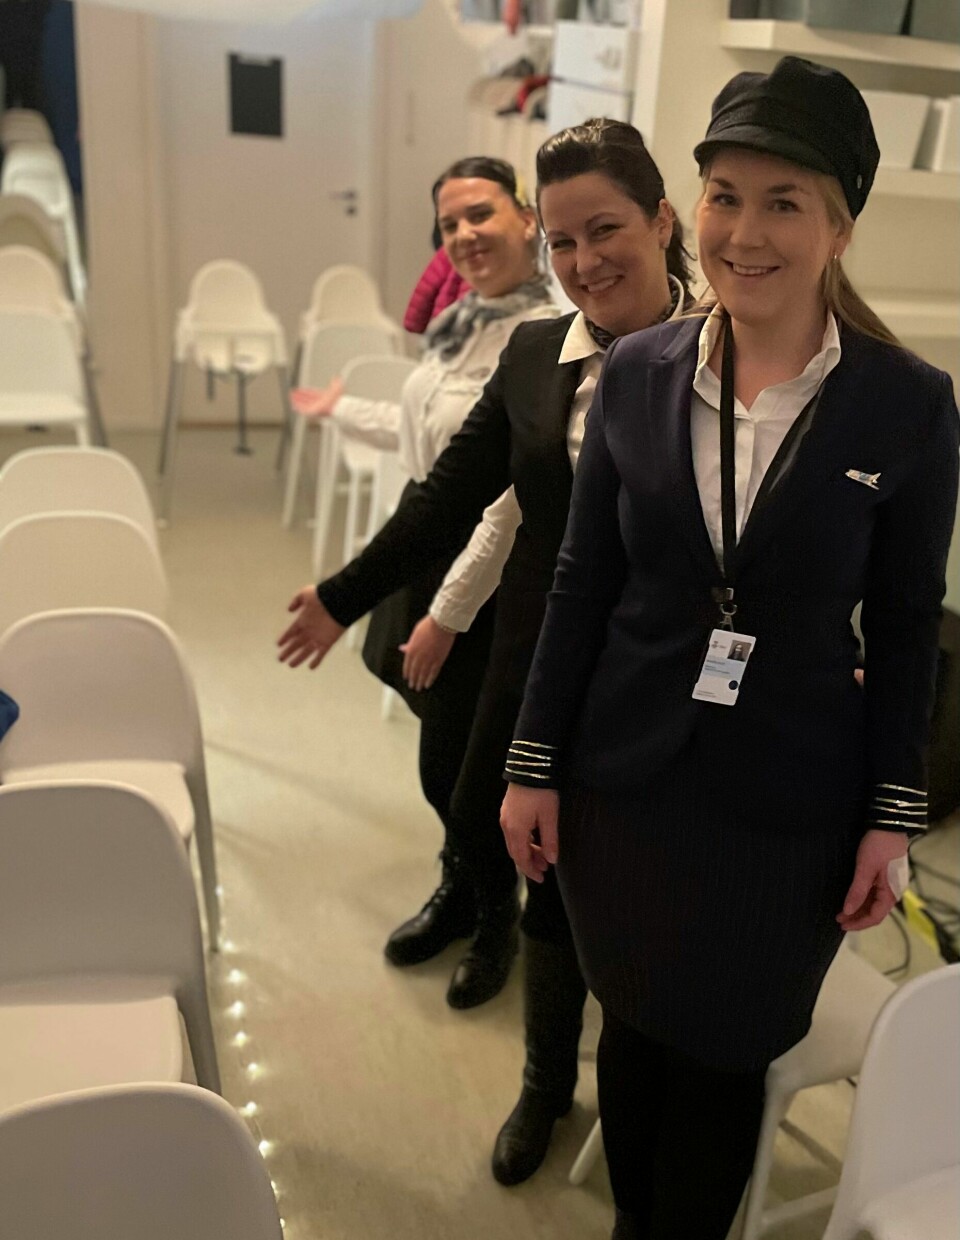 Velkommen om bord. Bakfra: Flyvertinnene Iris Kiràly, Sesilie Vea Thorsen og foran kaptein Emilie Engebretsen.